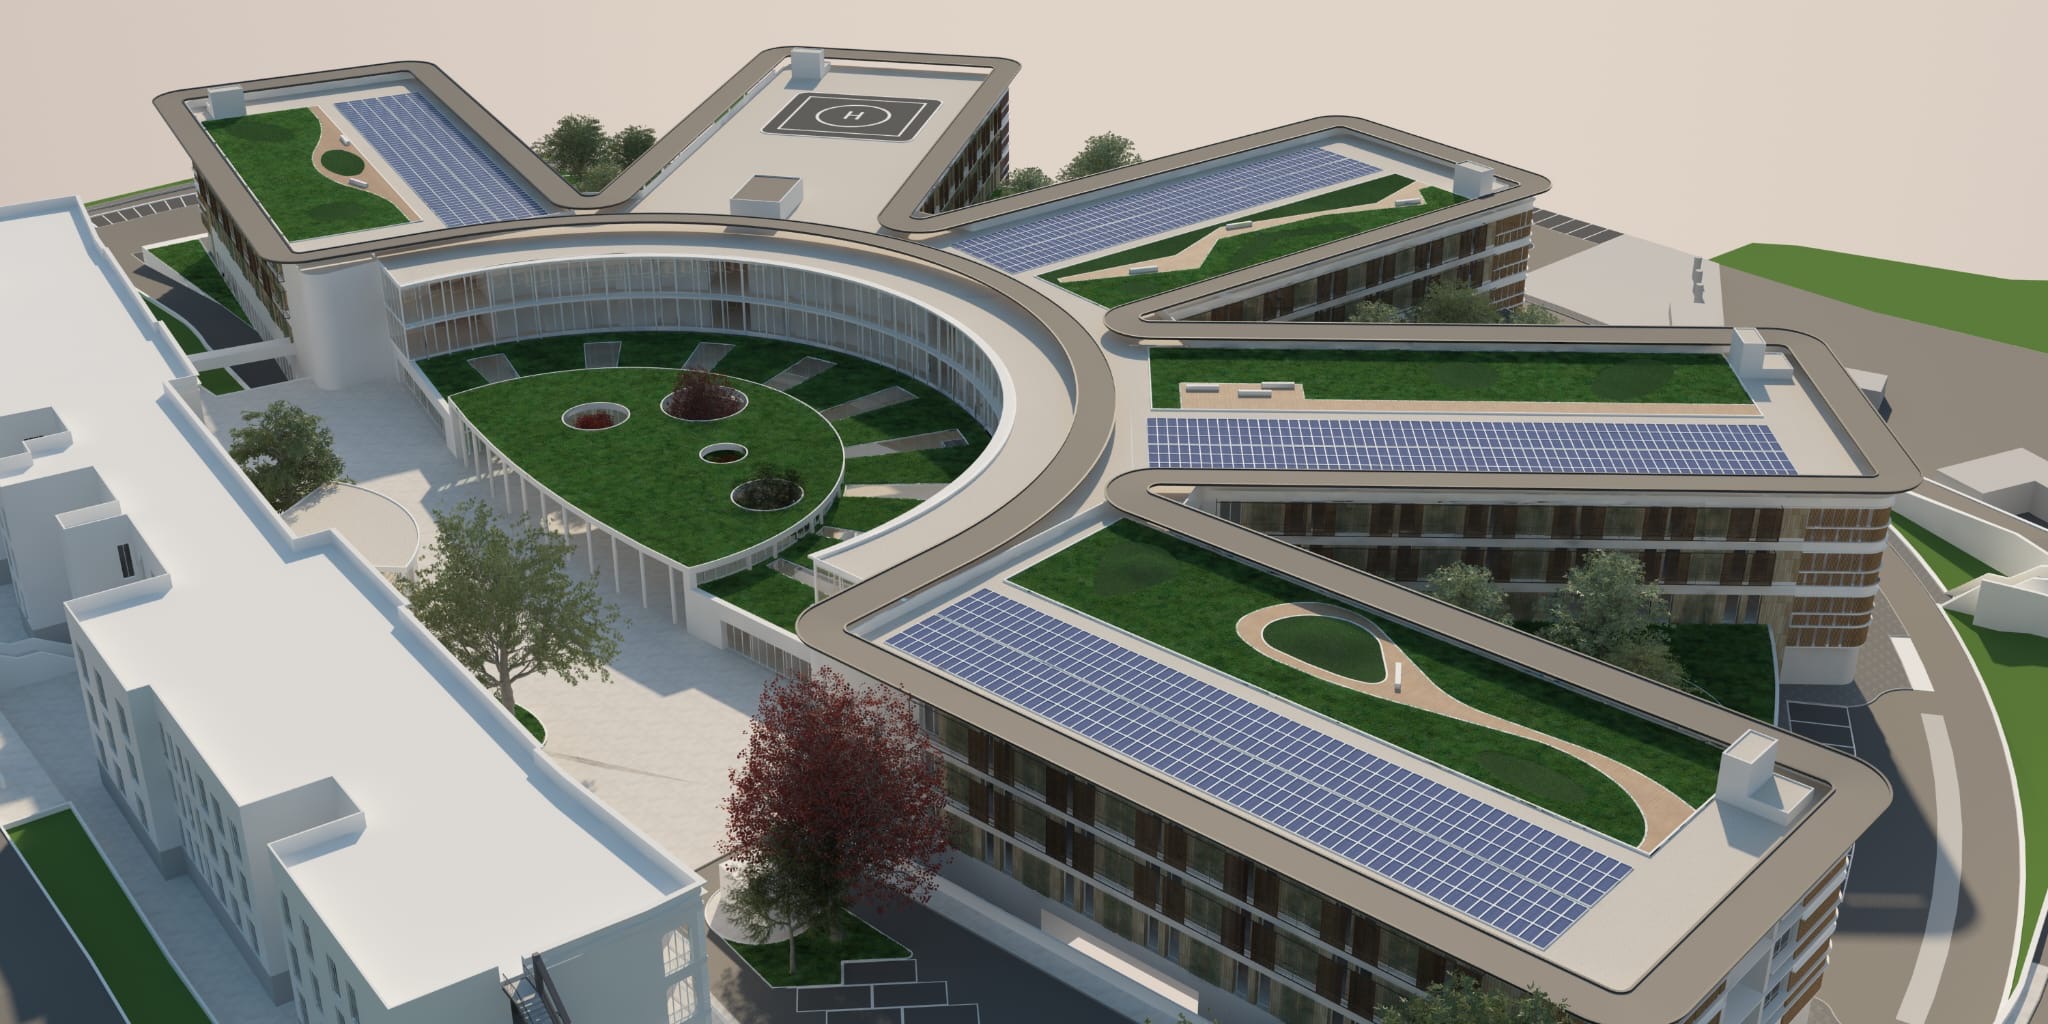  ‣ adn24 teramo | parte la progettazione del nuovo ospedale a villa mosca, costerà 200 milioni